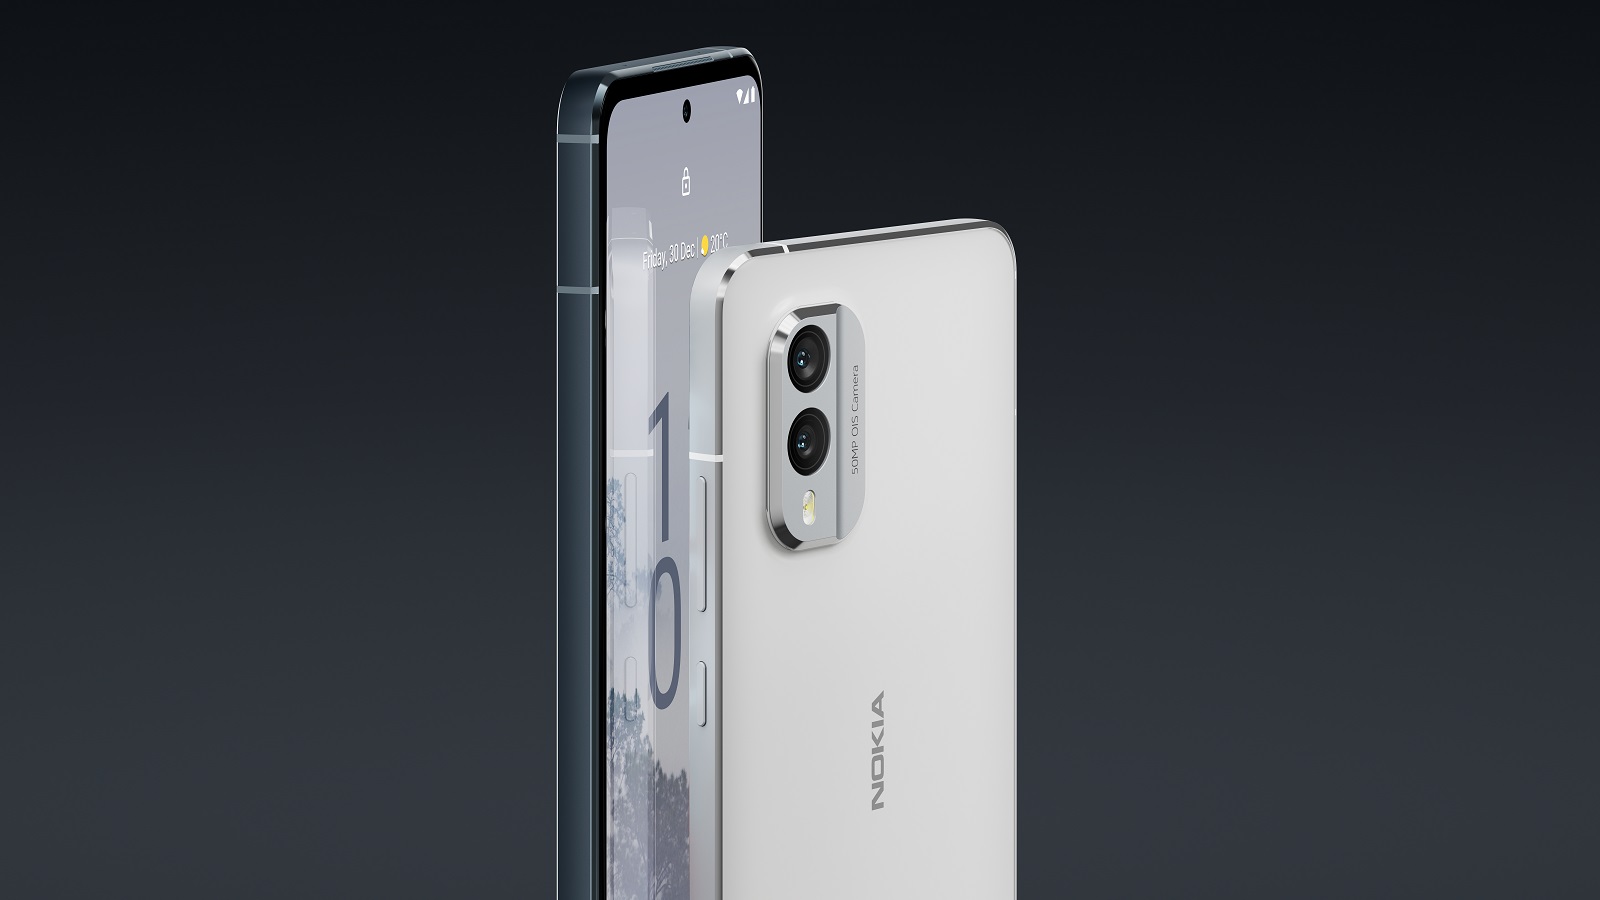 IFA : Nokia lance les X30 et G60, des smartphones 5G conçus pour connecter le monde sans coûter à la planète